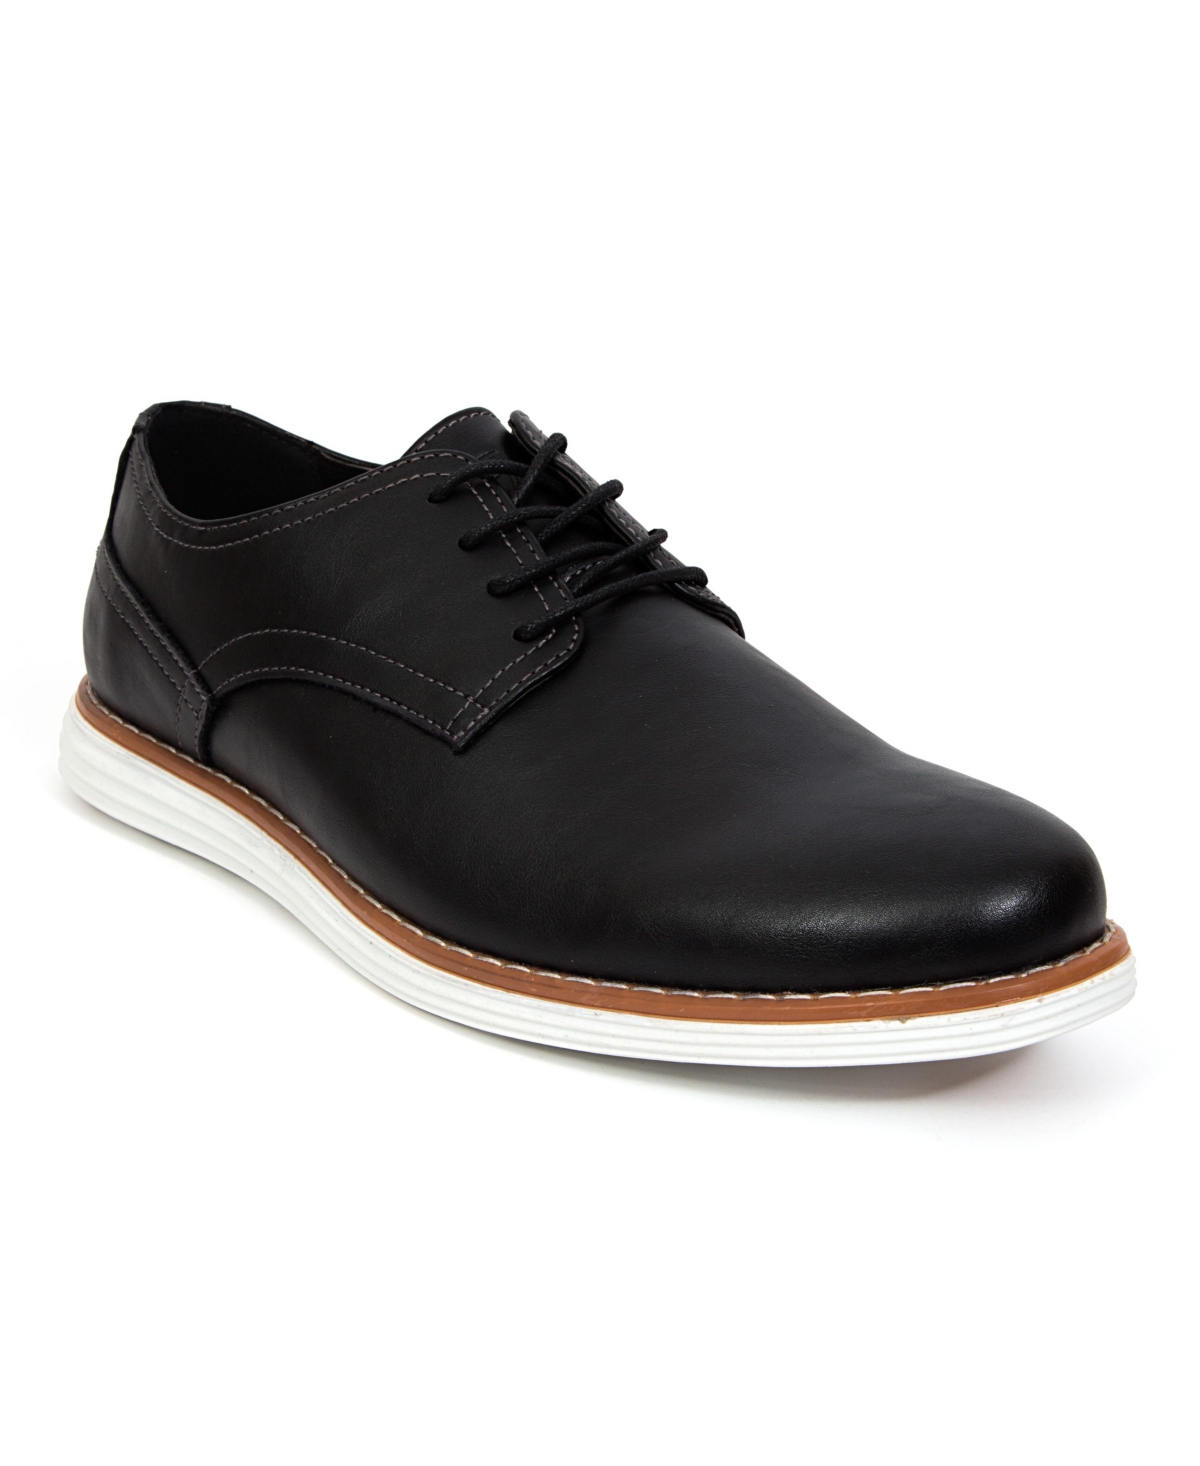 Men's Union Oxford Shoes - Brown